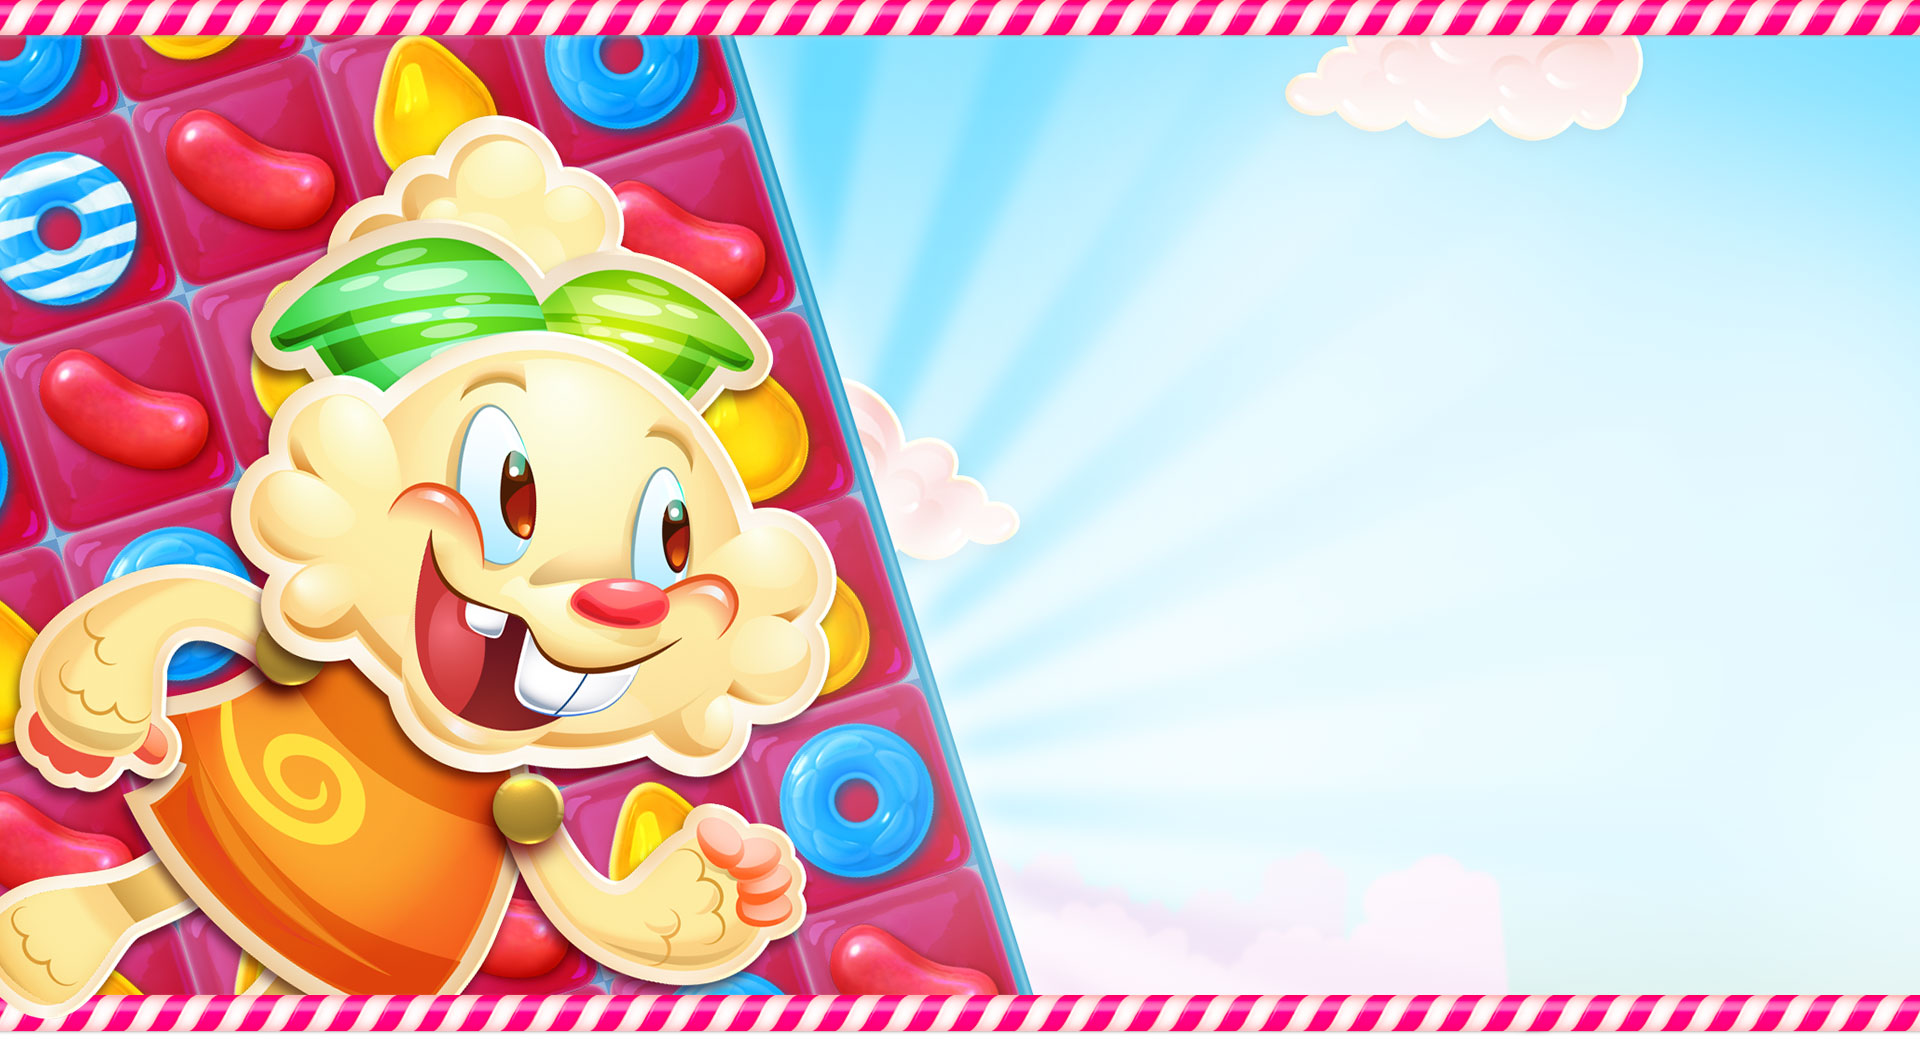 在 Candy Crush Jelly Saga 遊戲板前方，Jenny 快樂地笑著。